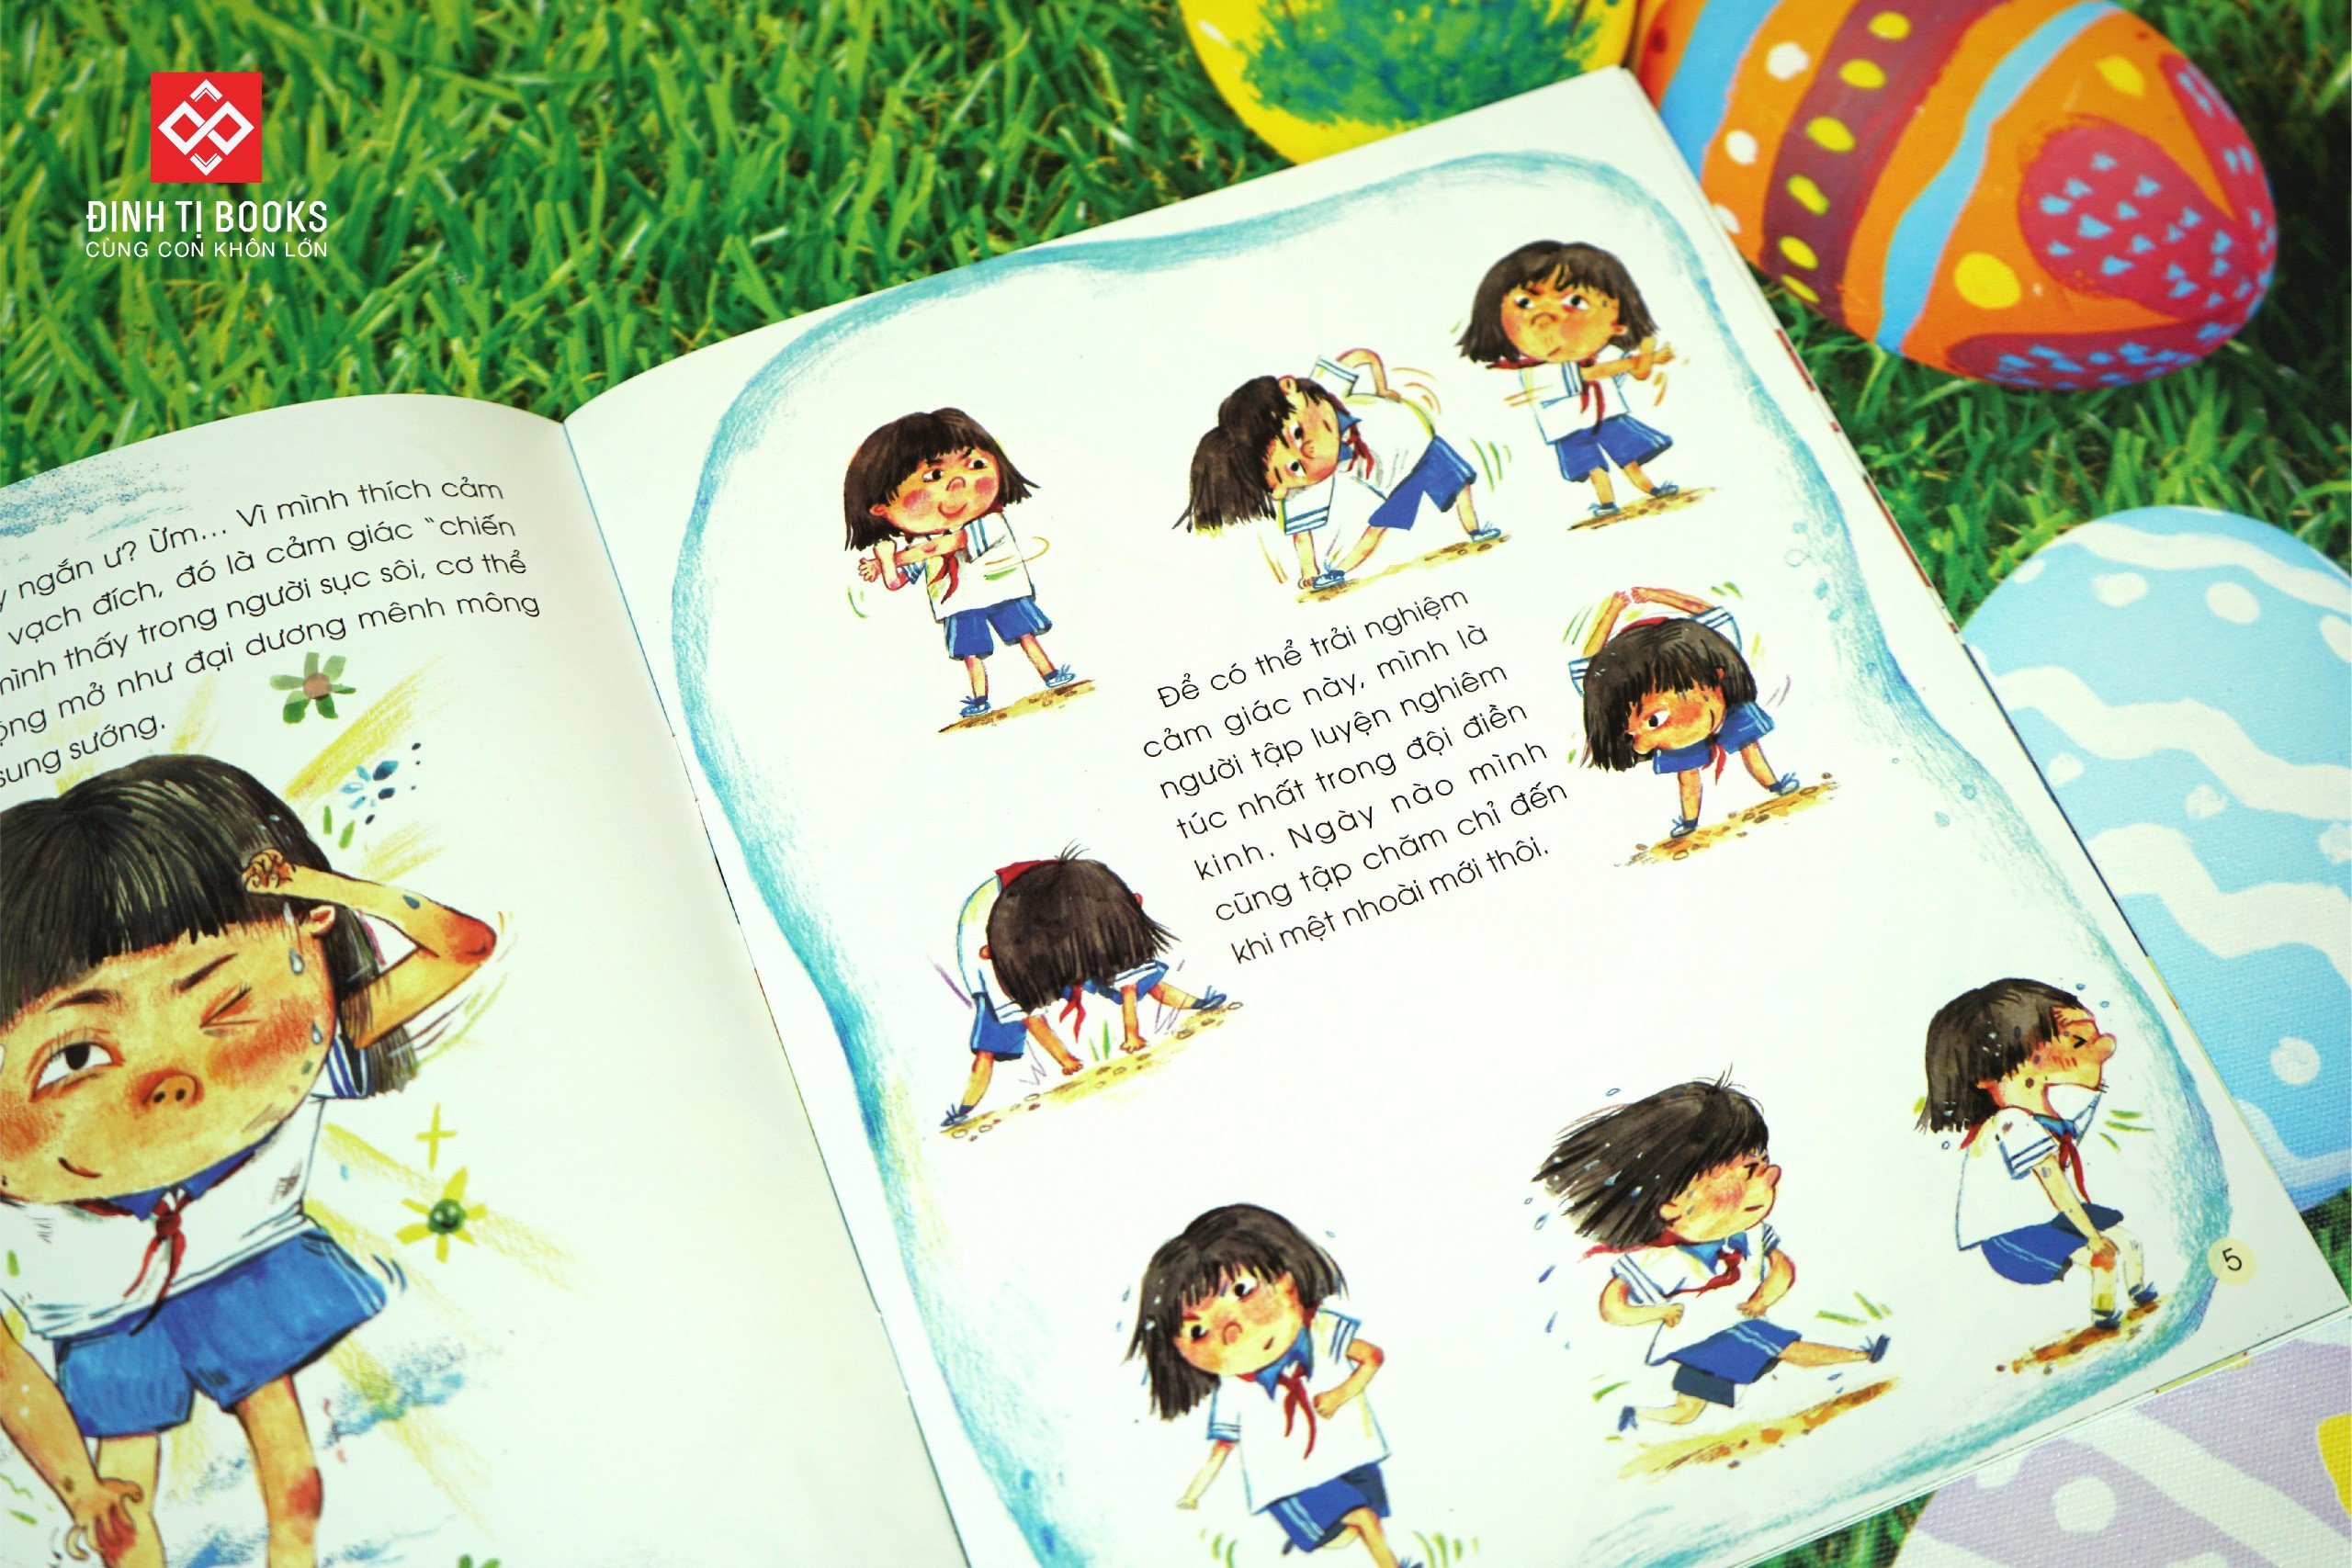 Sách - Kỹ năng quản lý cảm xúc dành cho bé gái - Giáo dục đầu đời cho trẻ 6 - 12 tuổi - Đinh Tị Books